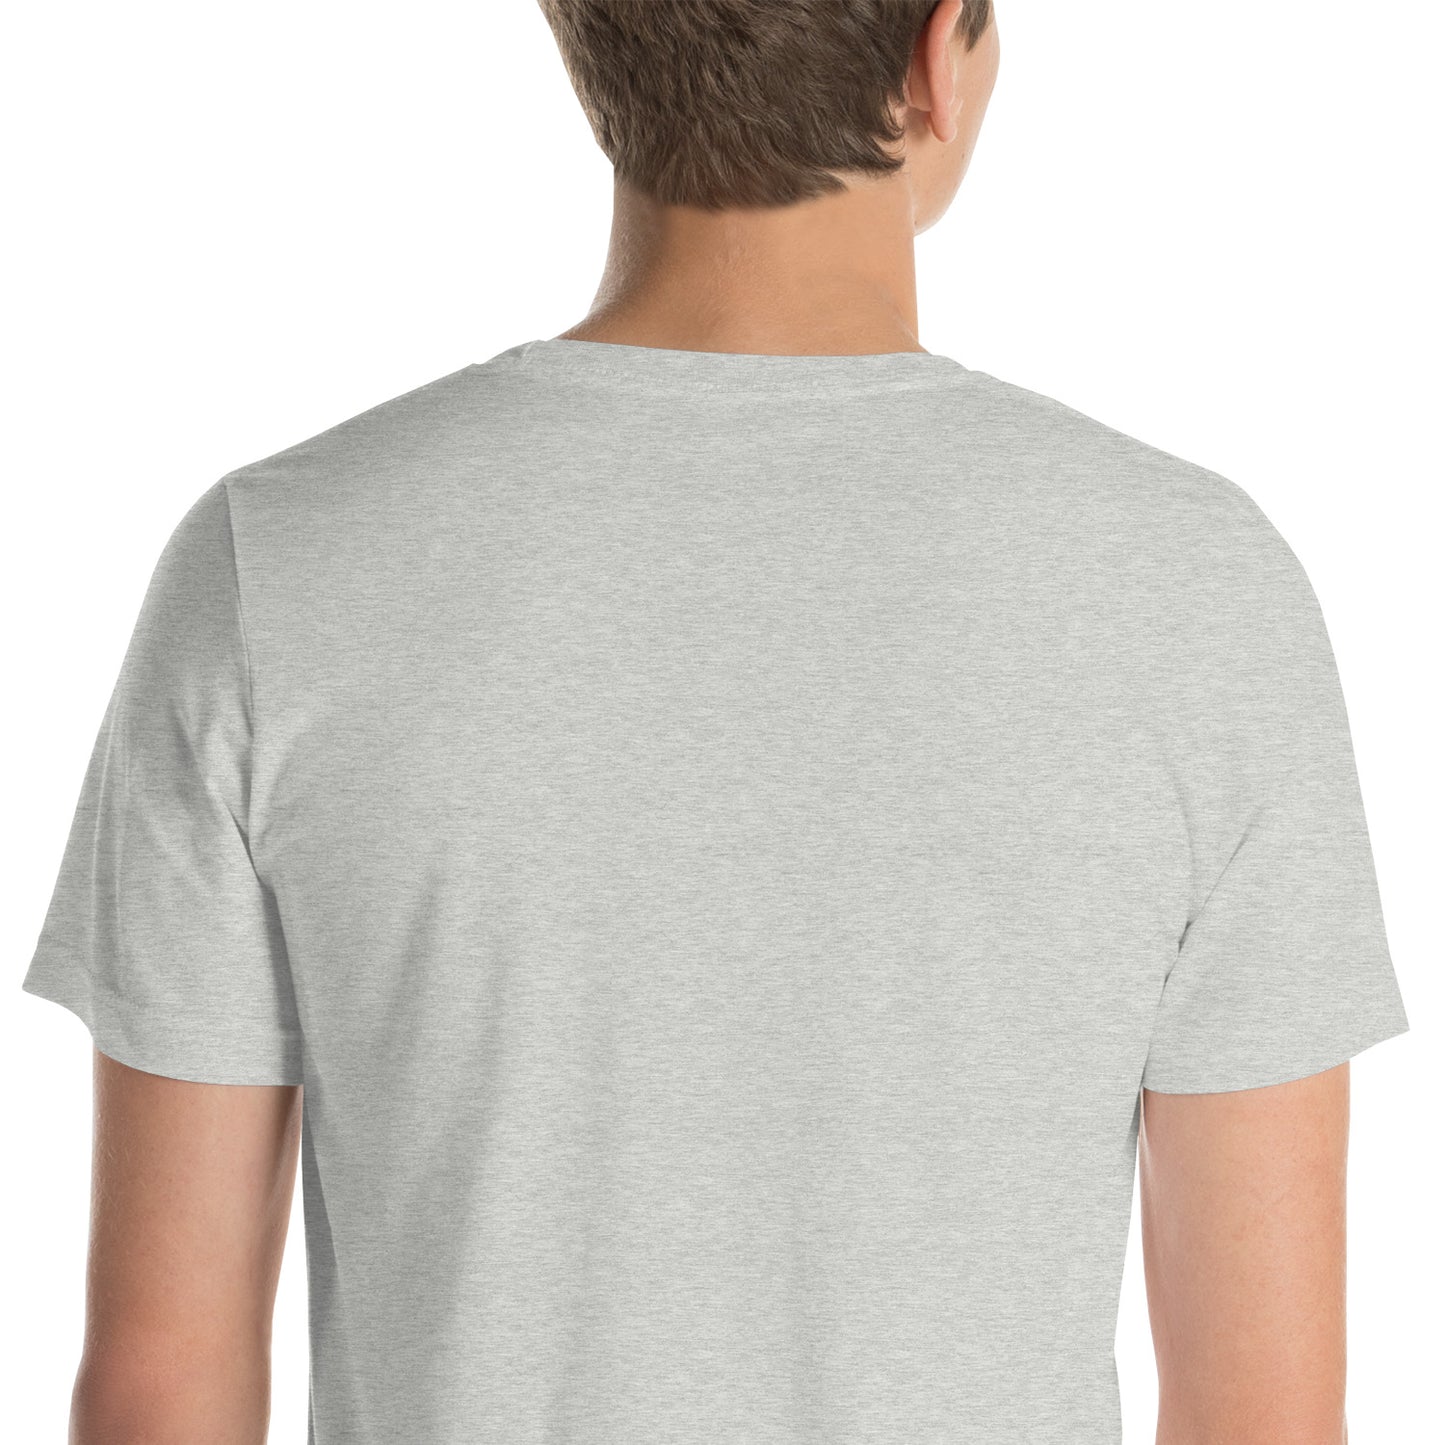 Unisex Adult - Shirt (Big Logo)